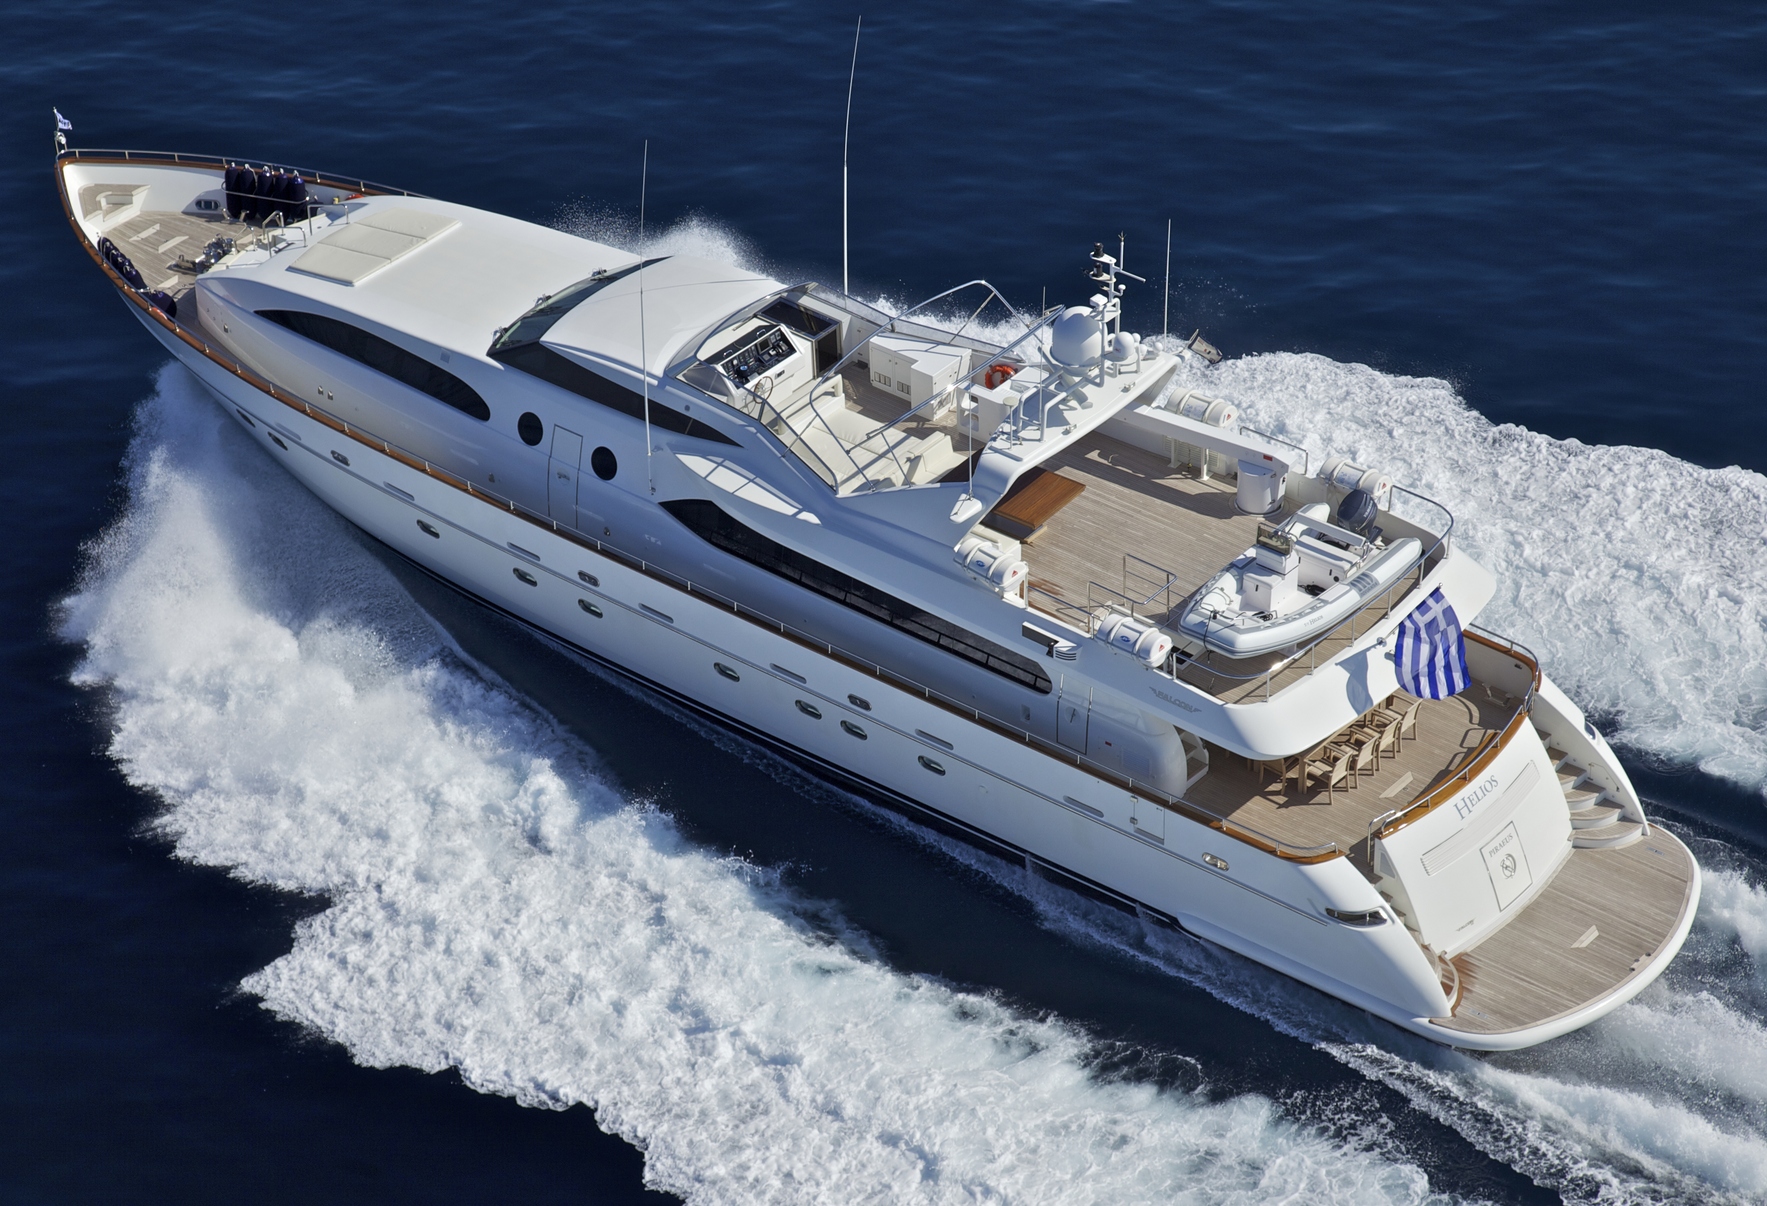 the helios yacht